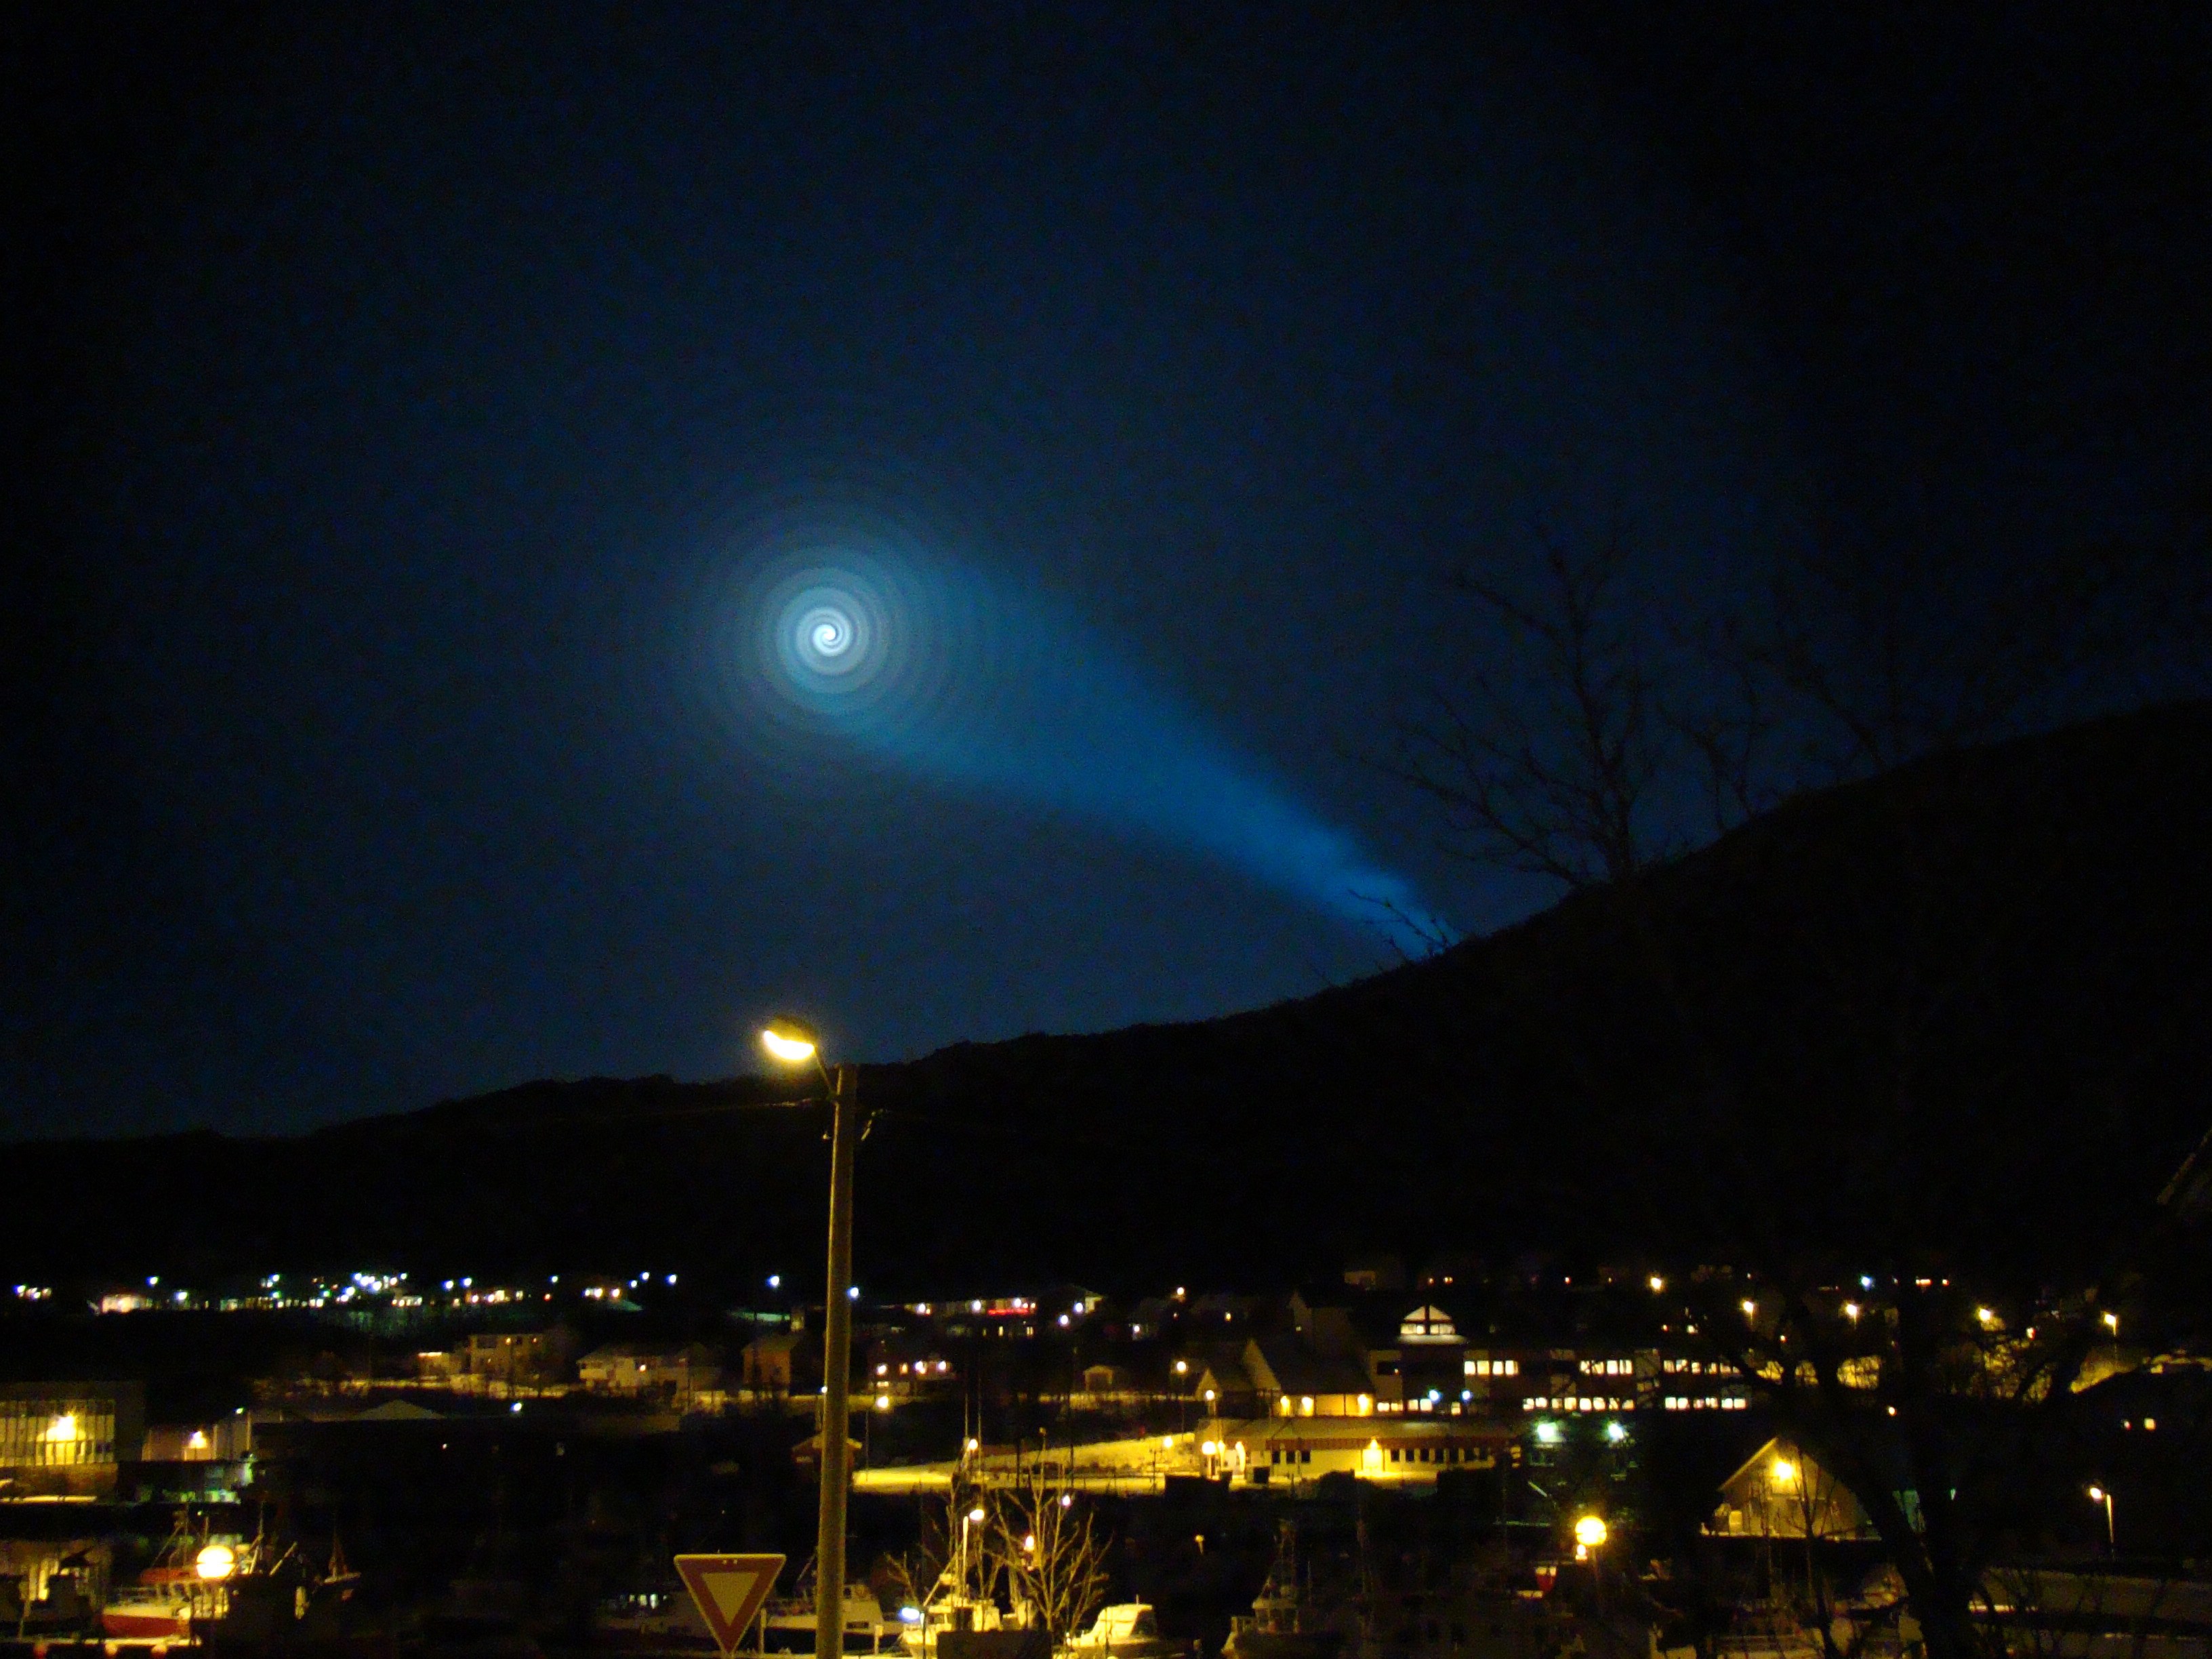 През 2009 г. в Норвегия наблюдаваната сфера и светлинен шлейф се оказа руска учебна ракета